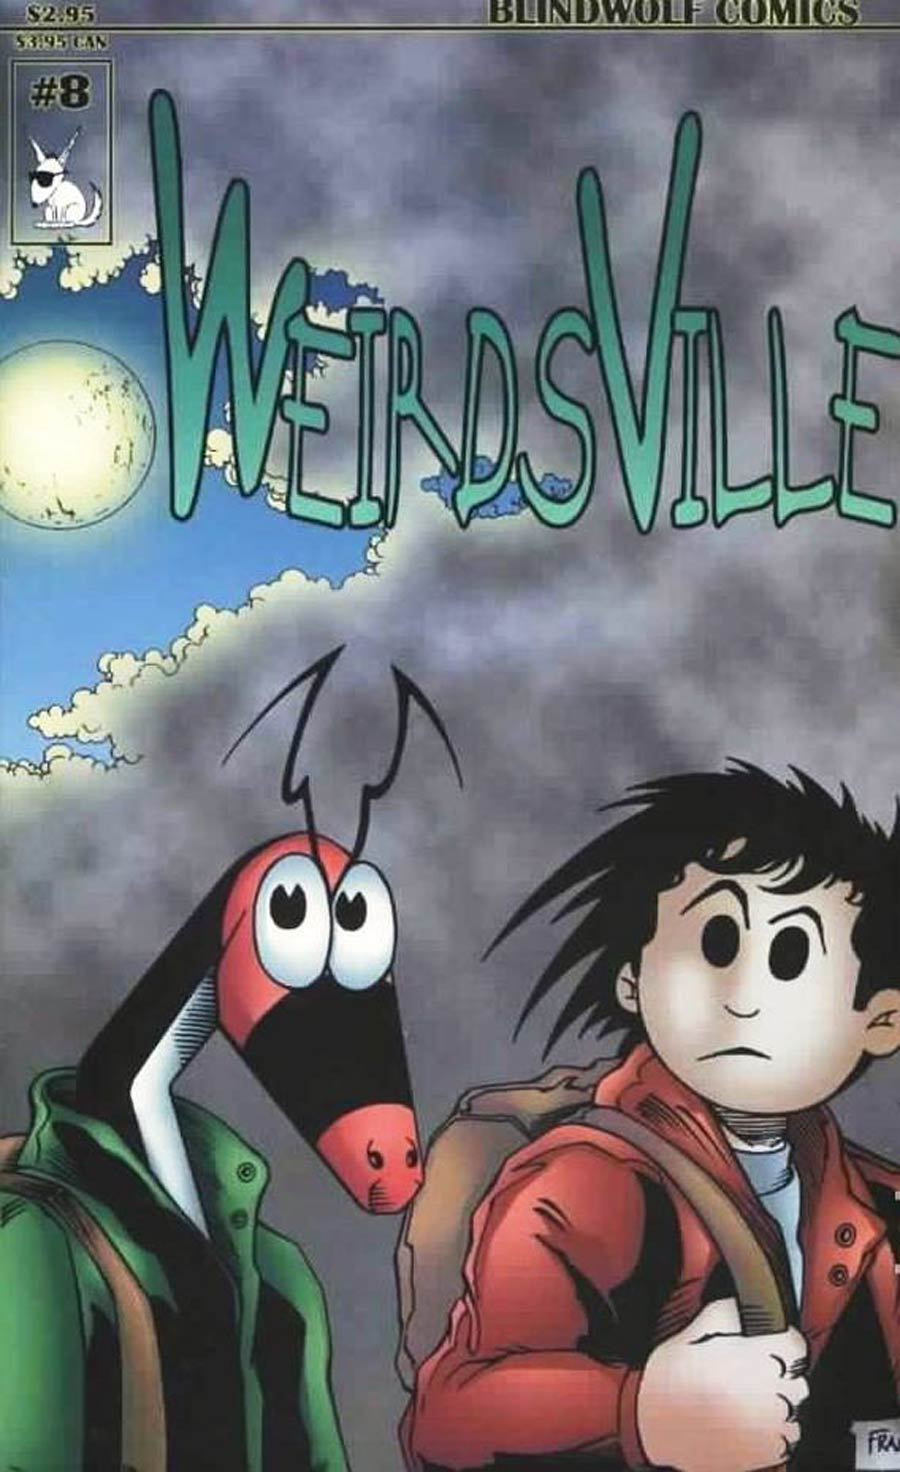 Weirdsville #8